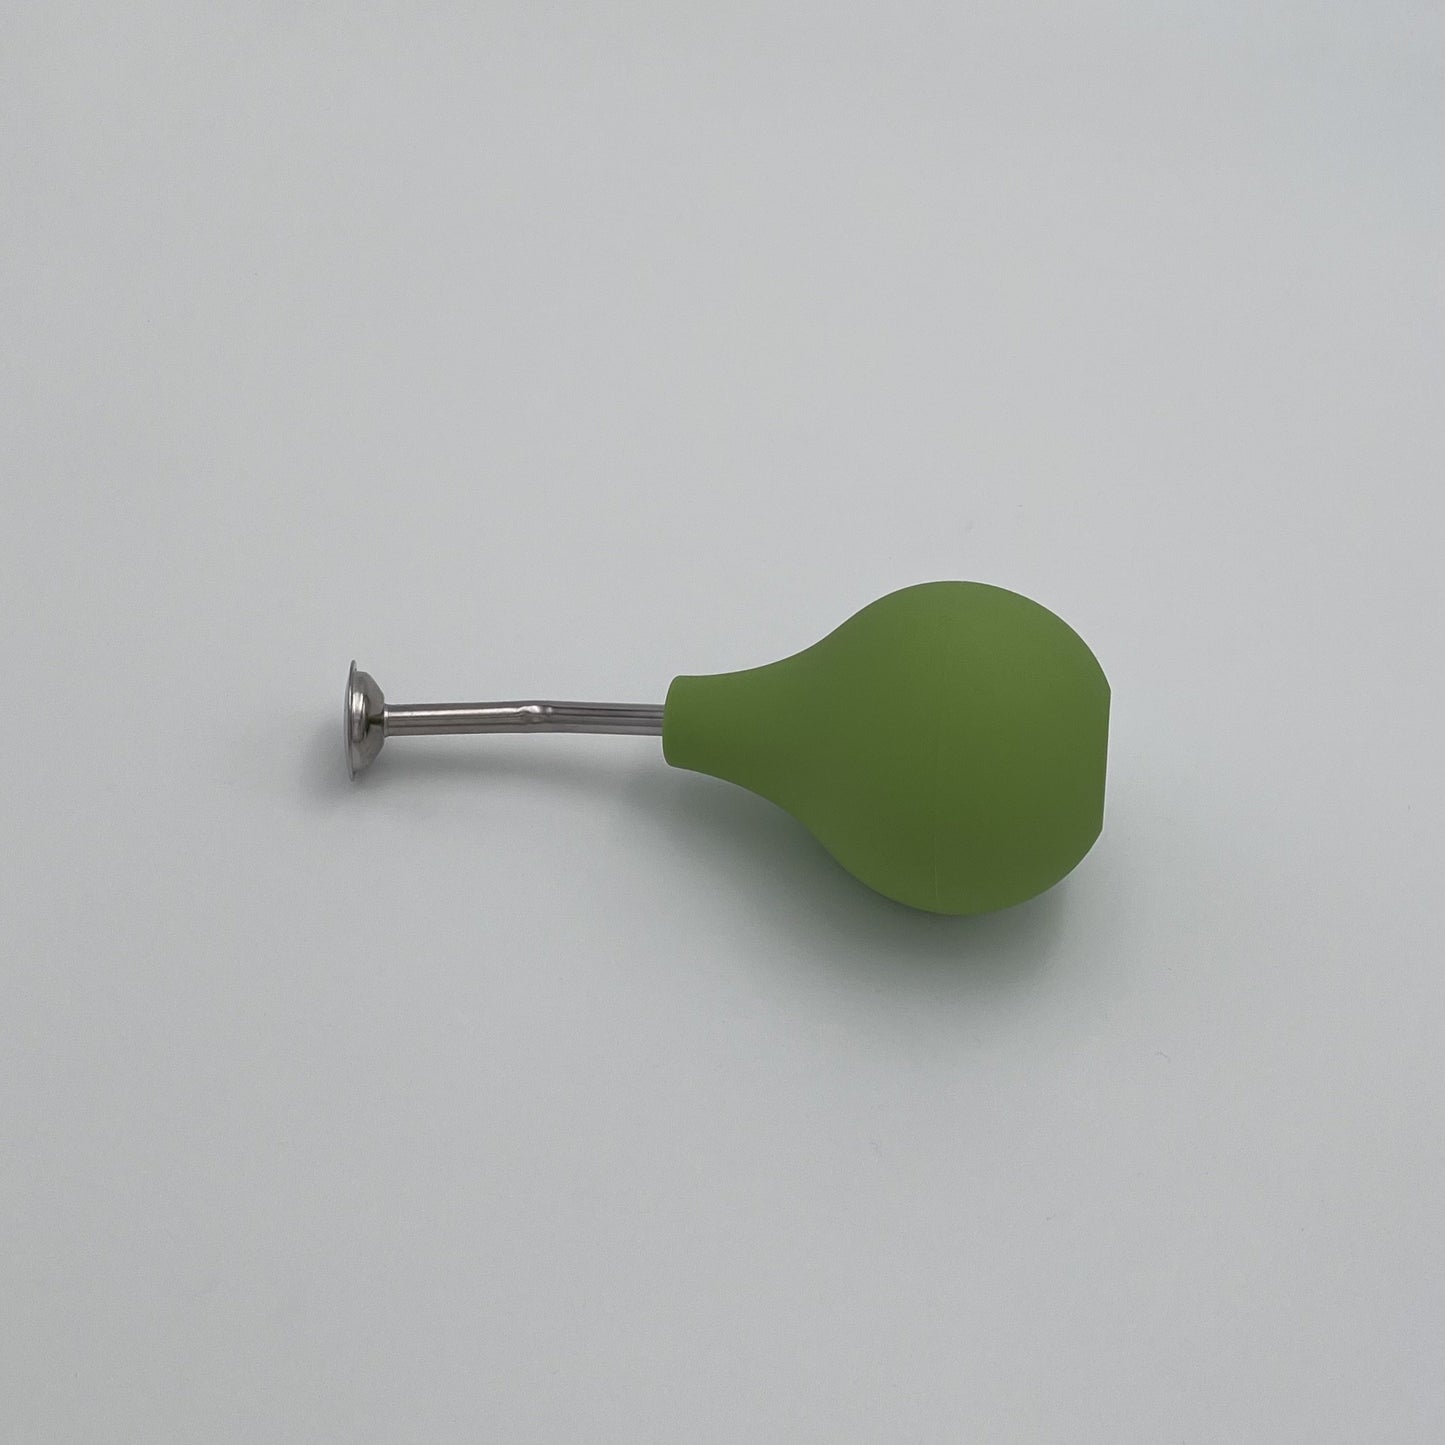 Green rubber spray ball for wet felting